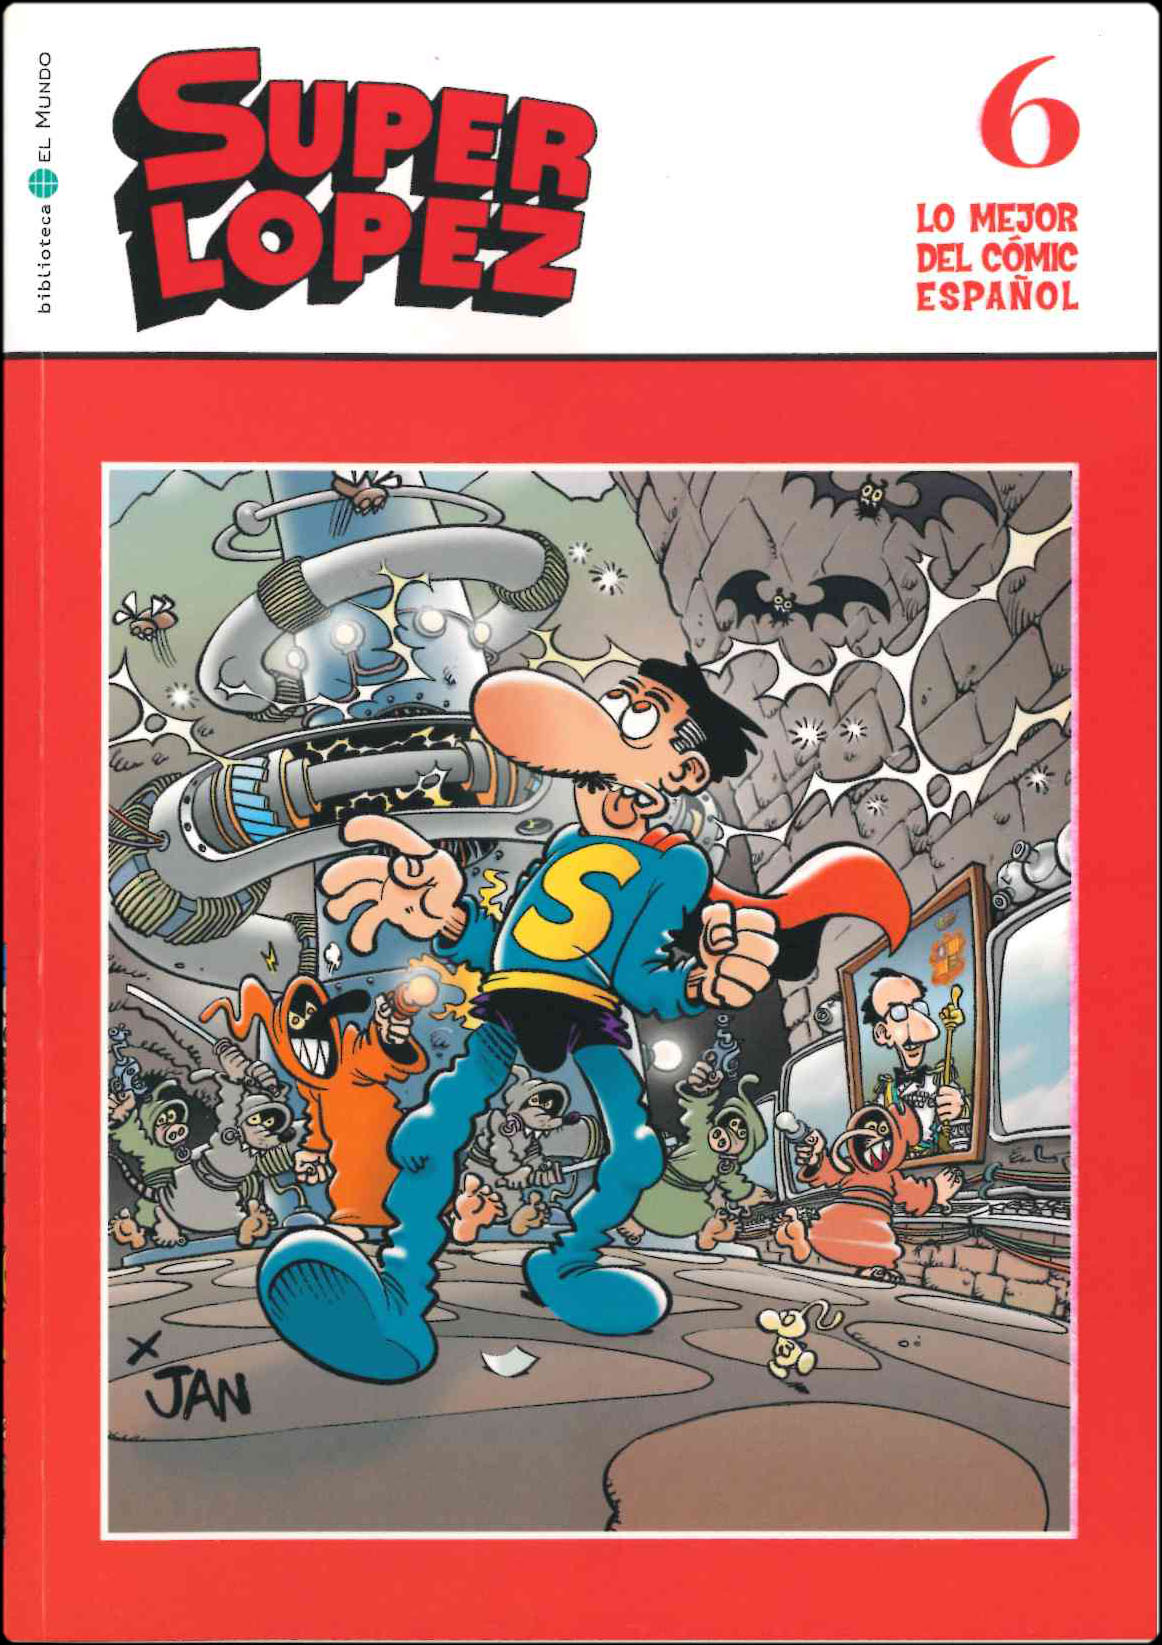 Lo mejor del Cómic Español. Grupo Zeta: El Mundo / Ediciones B 2006. Nº 6. Súper López